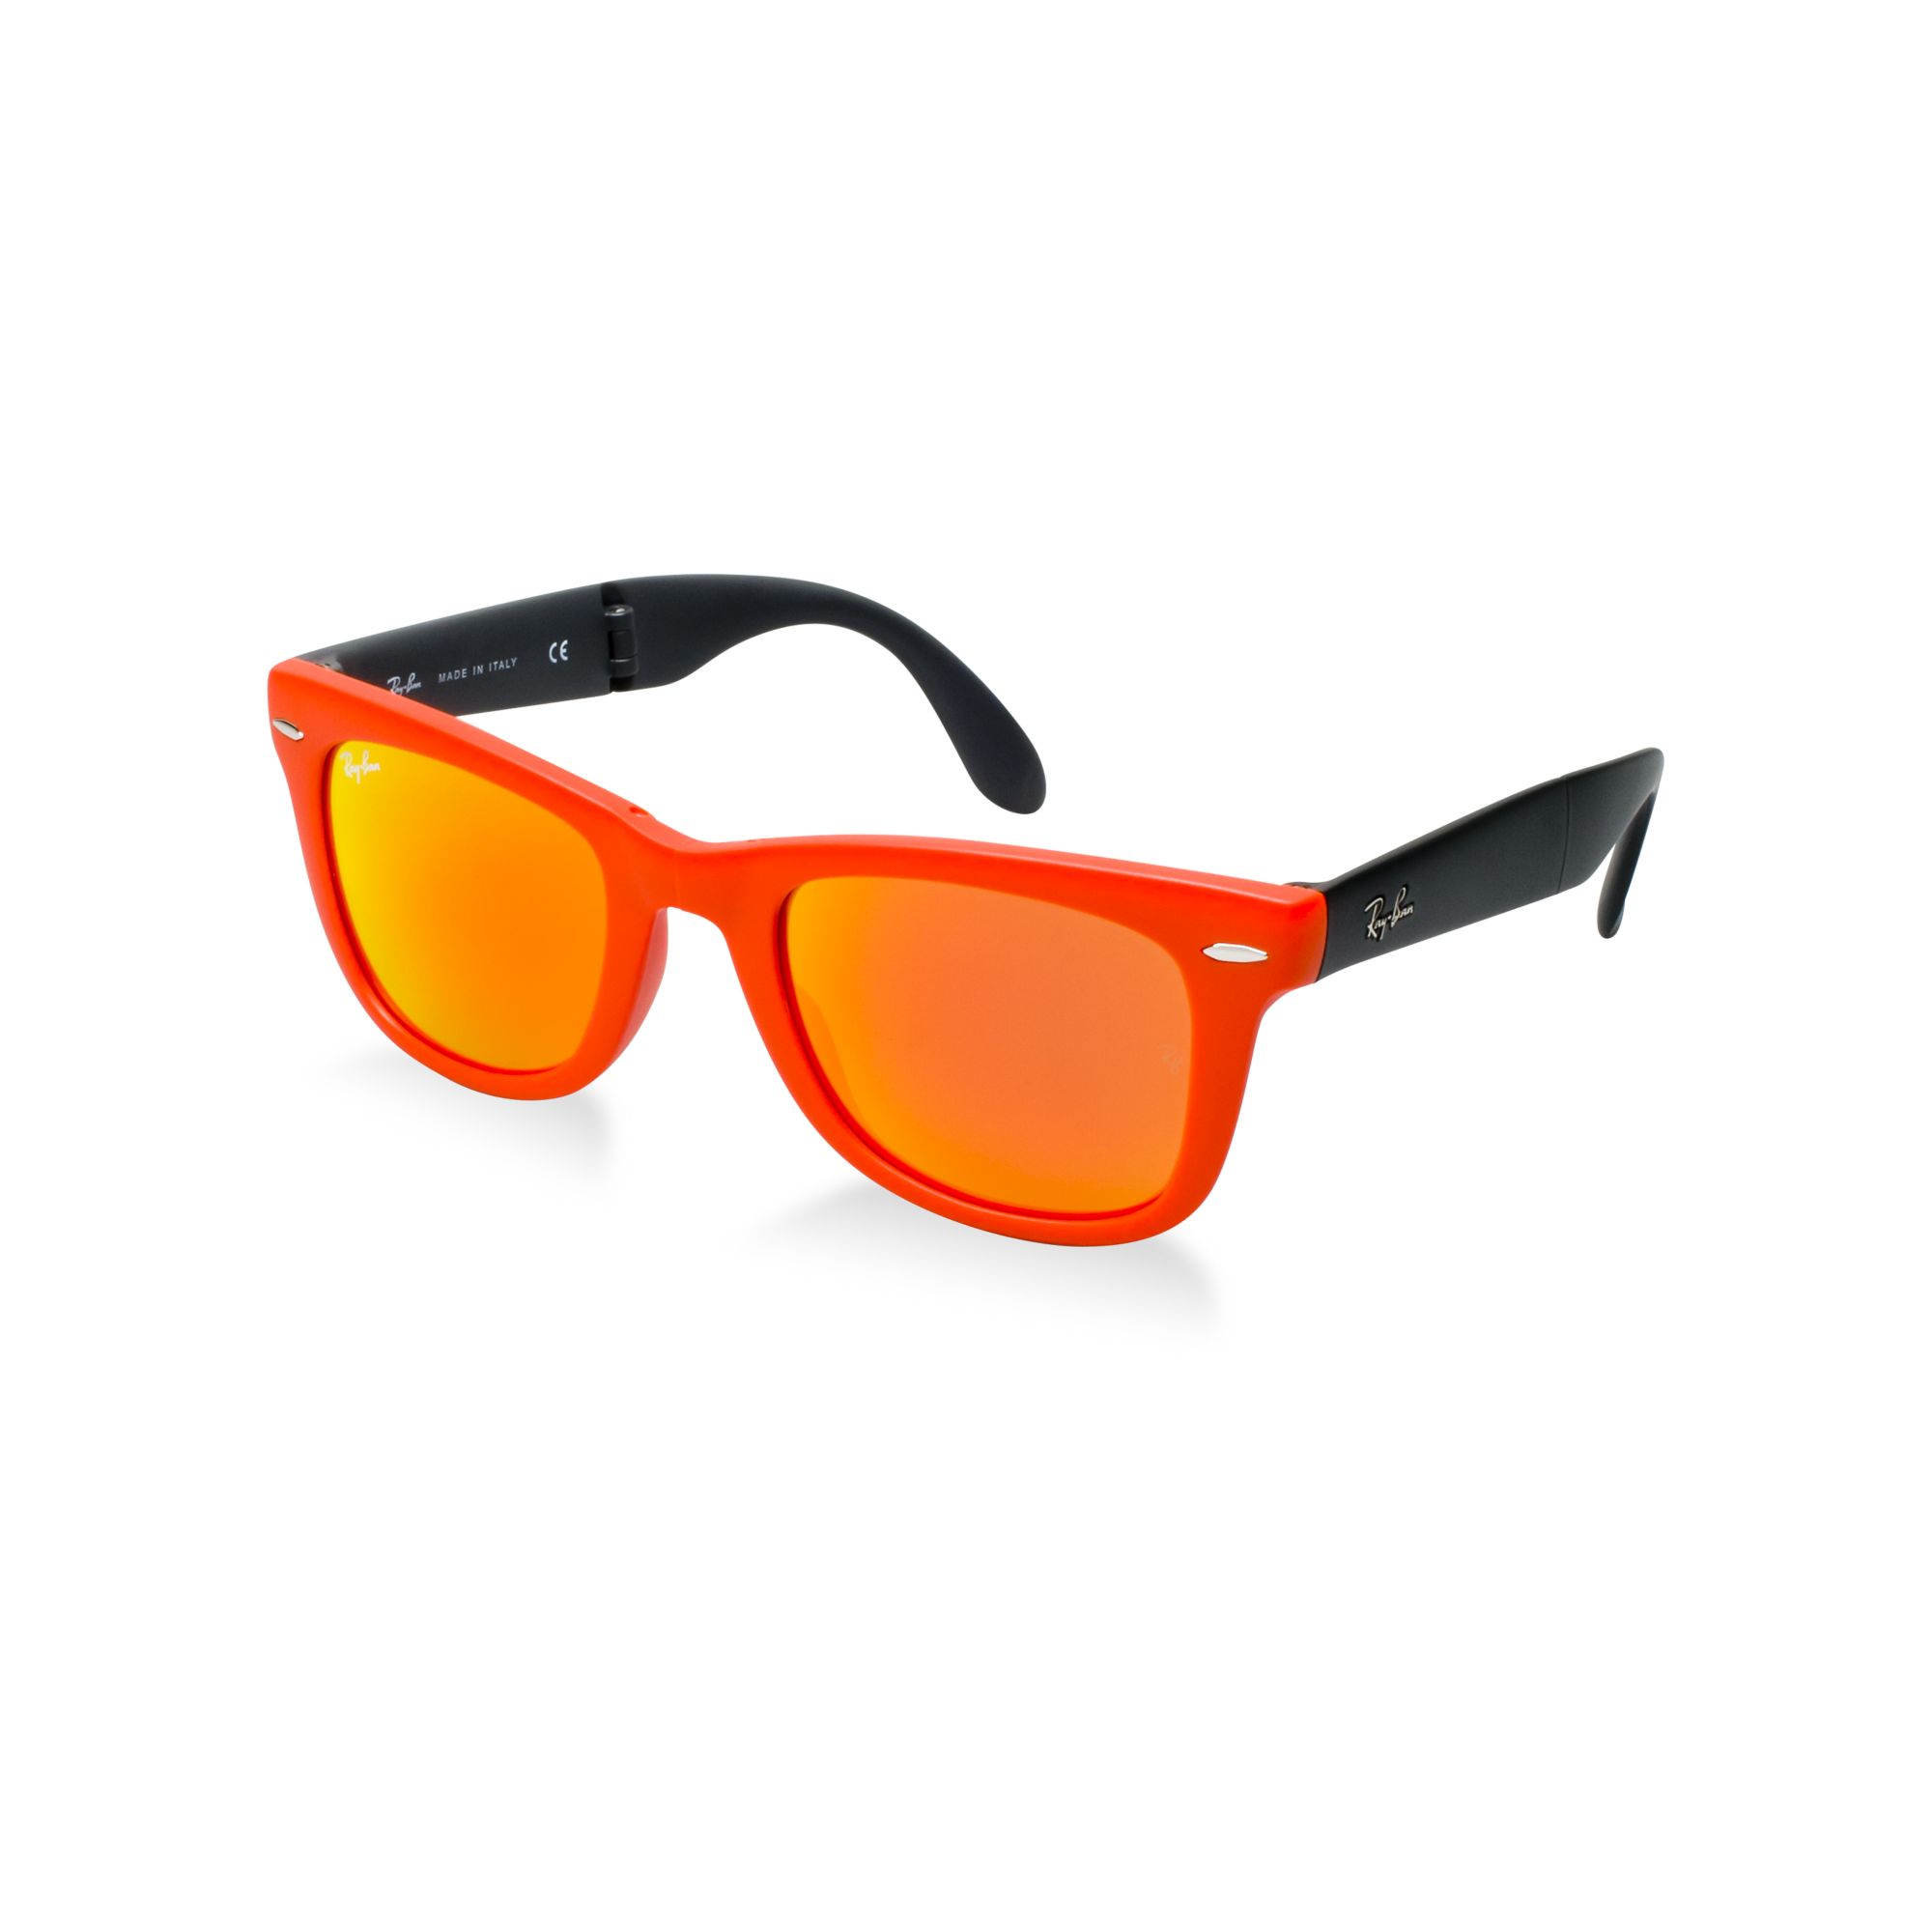 Ray-Ban Folding Wayfarer Sunglasses in 